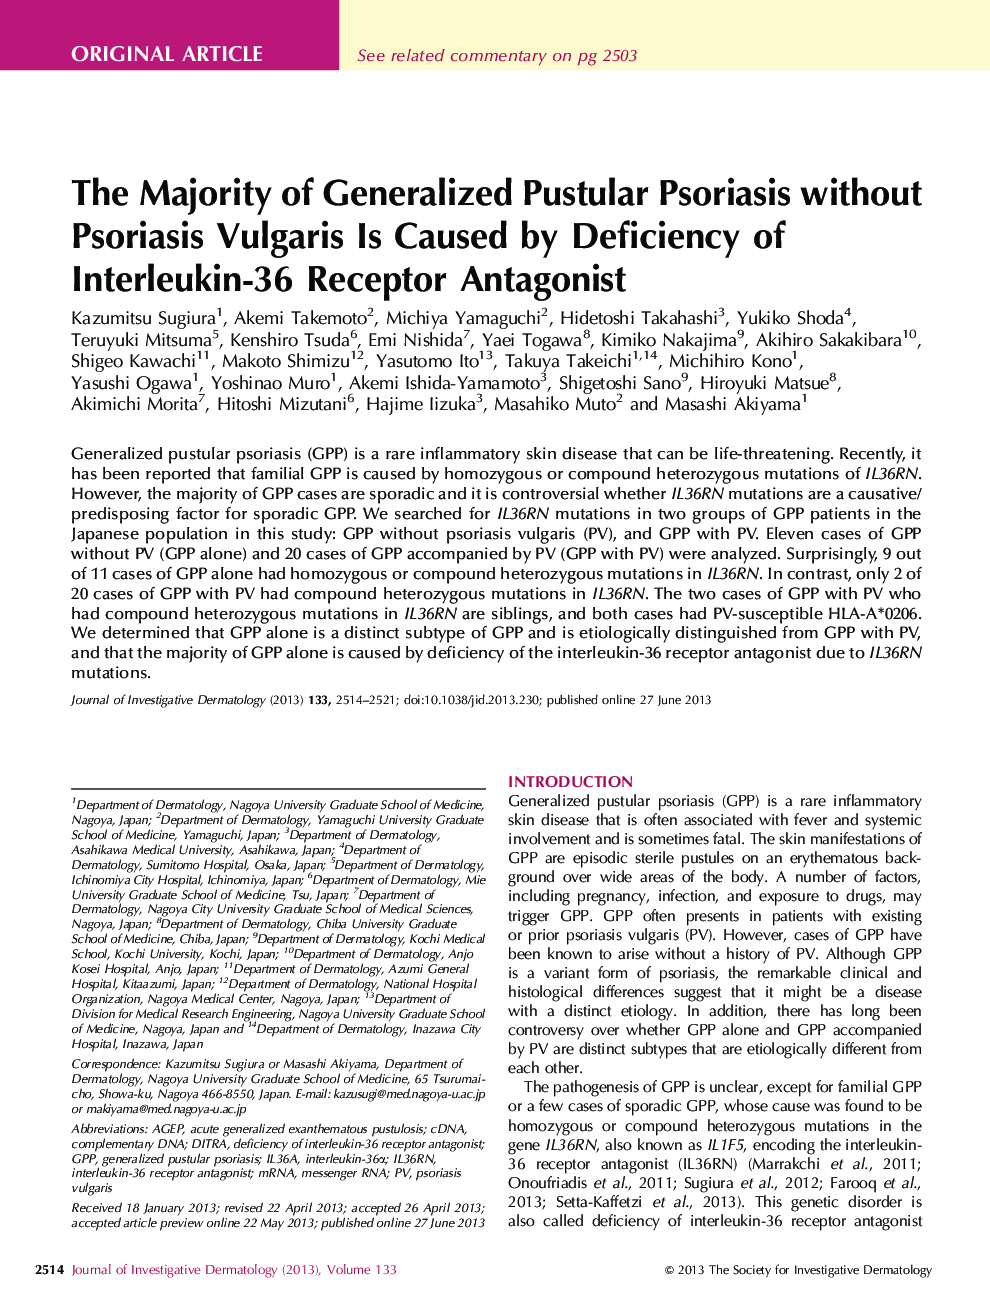 مقدمه اصلی اکثریت پسوریازیس پوزولانی متعارف بدون پسوریازیس ولگاریس ناشی از کمبود آنتاگونیست گیرنده اینترلوکین-36 است 